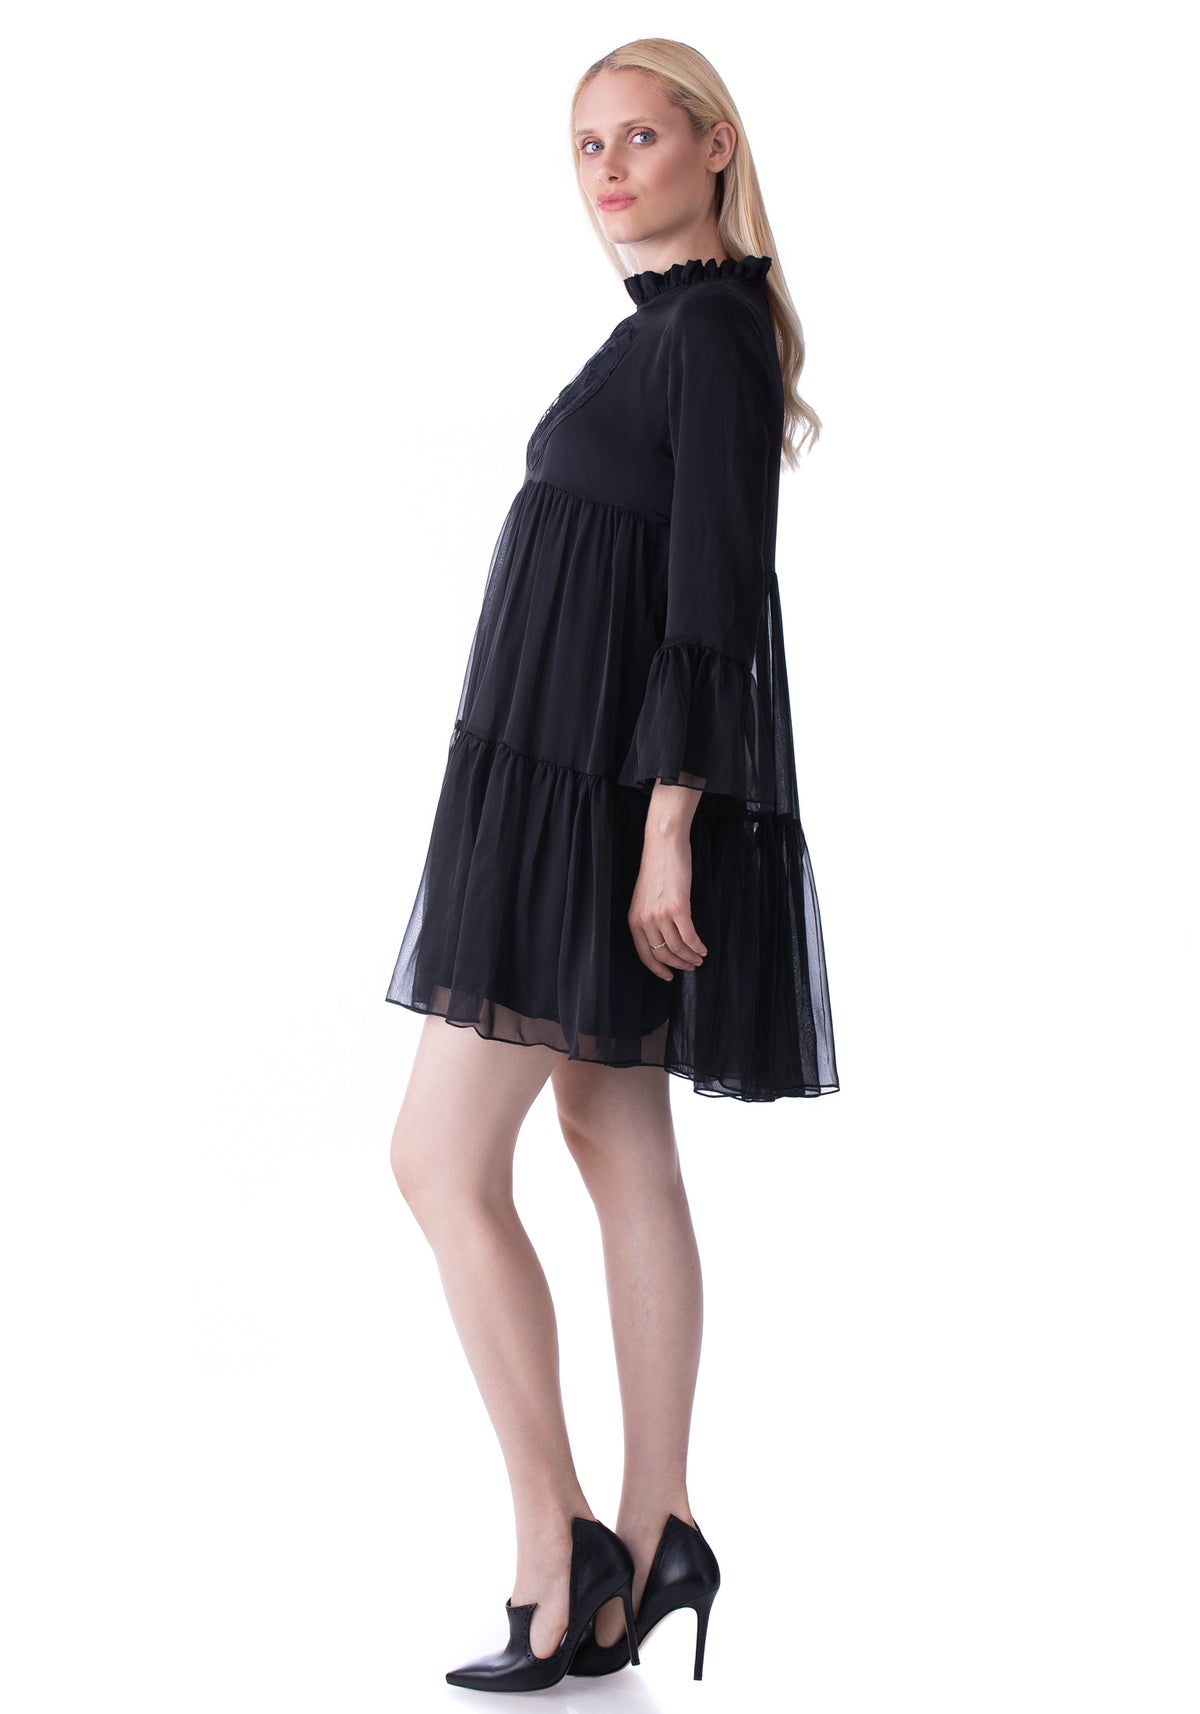 Embroidered Short Black Dress